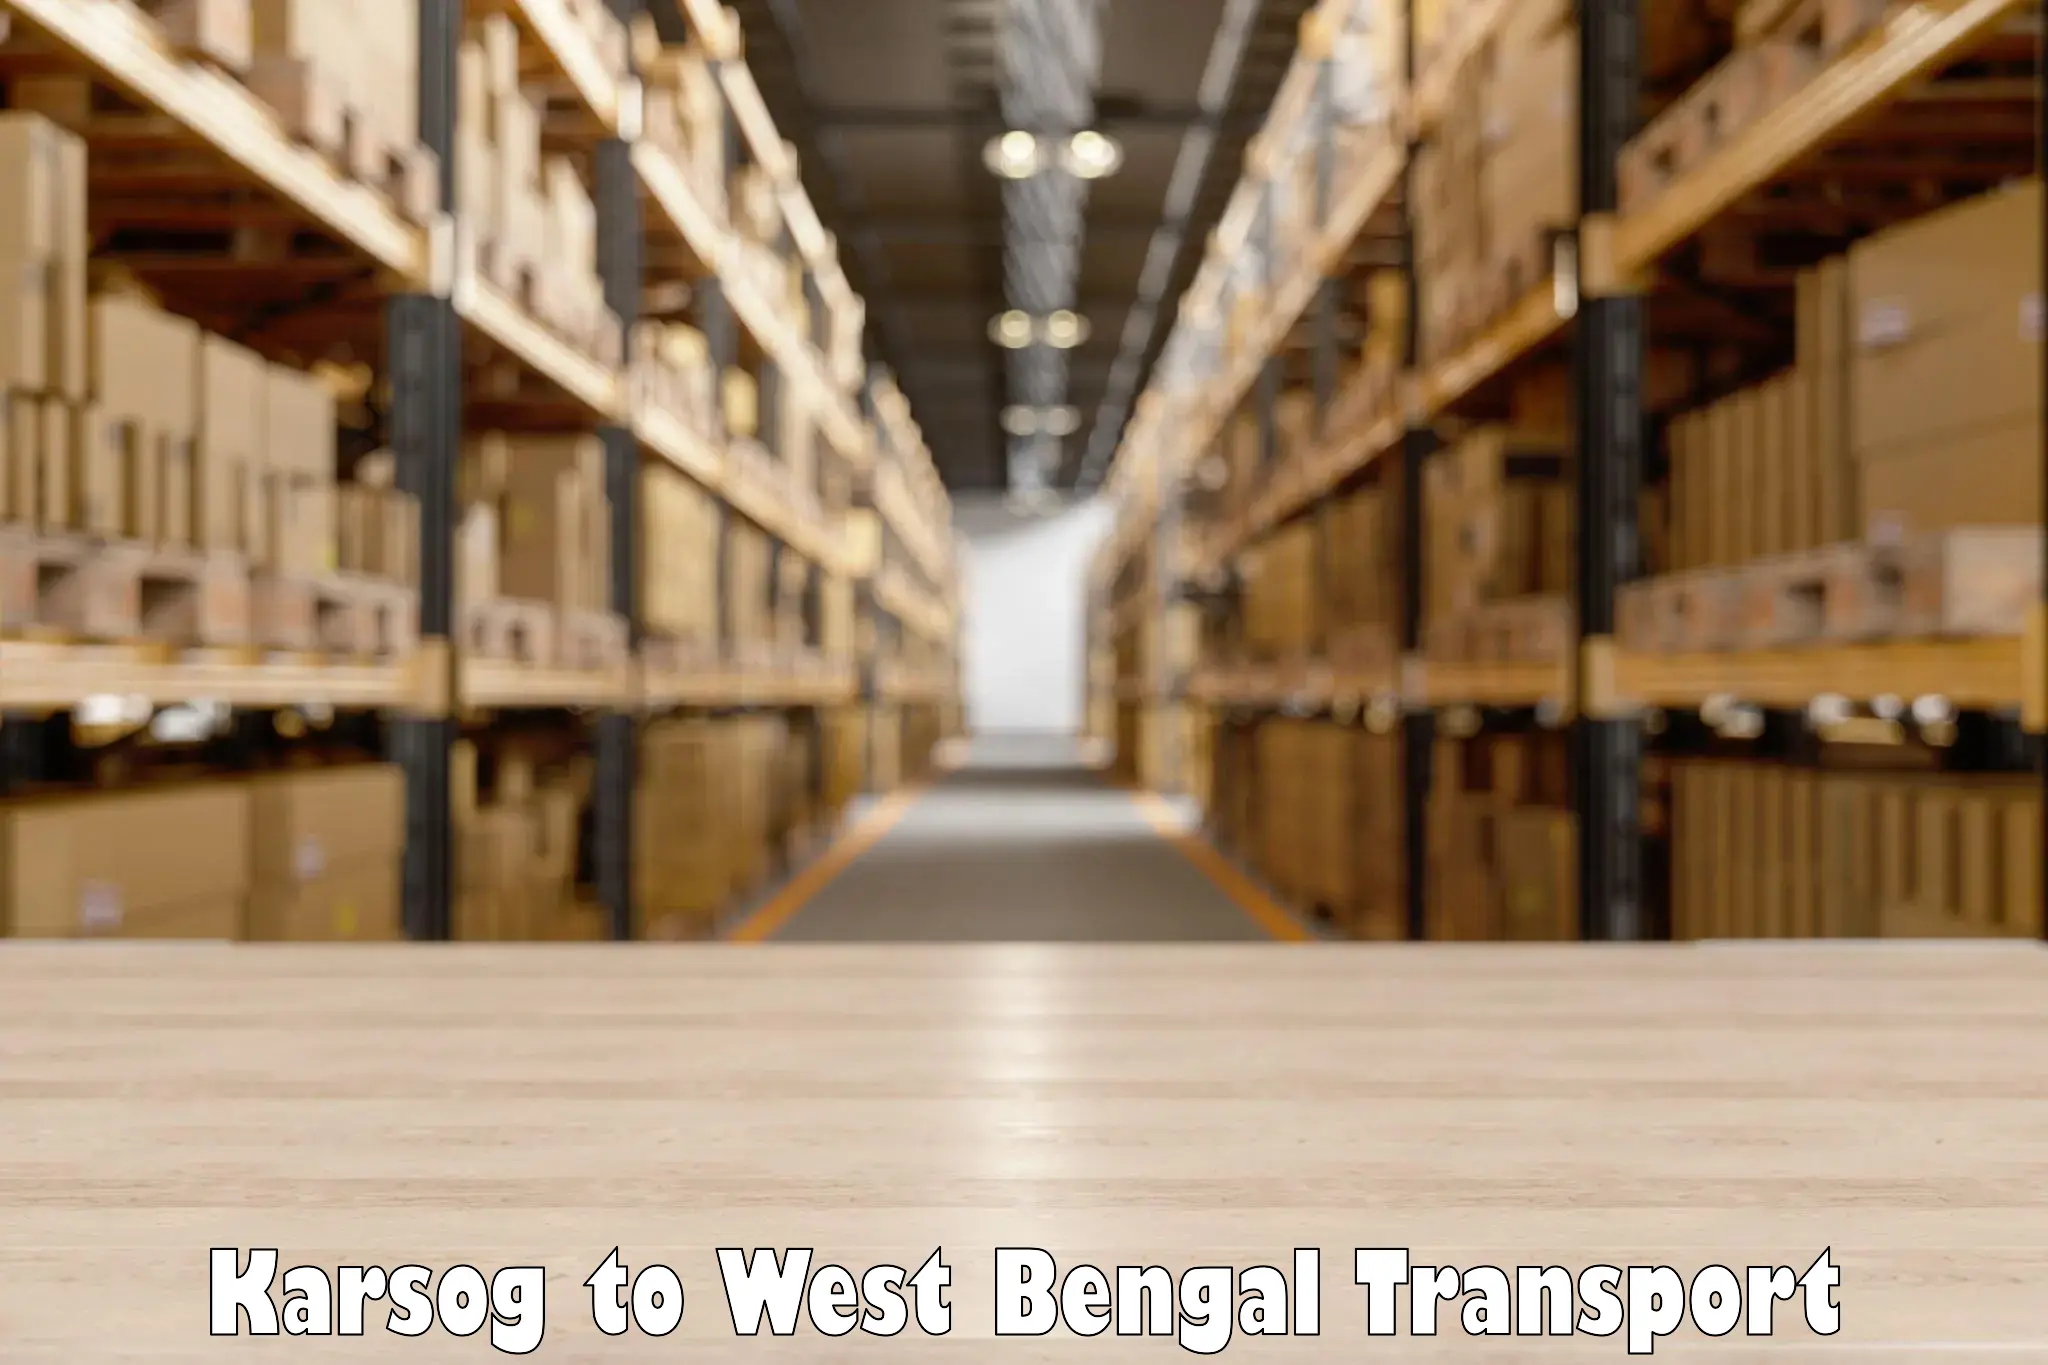 Vehicle transport services Karsog to Sehara Bazar